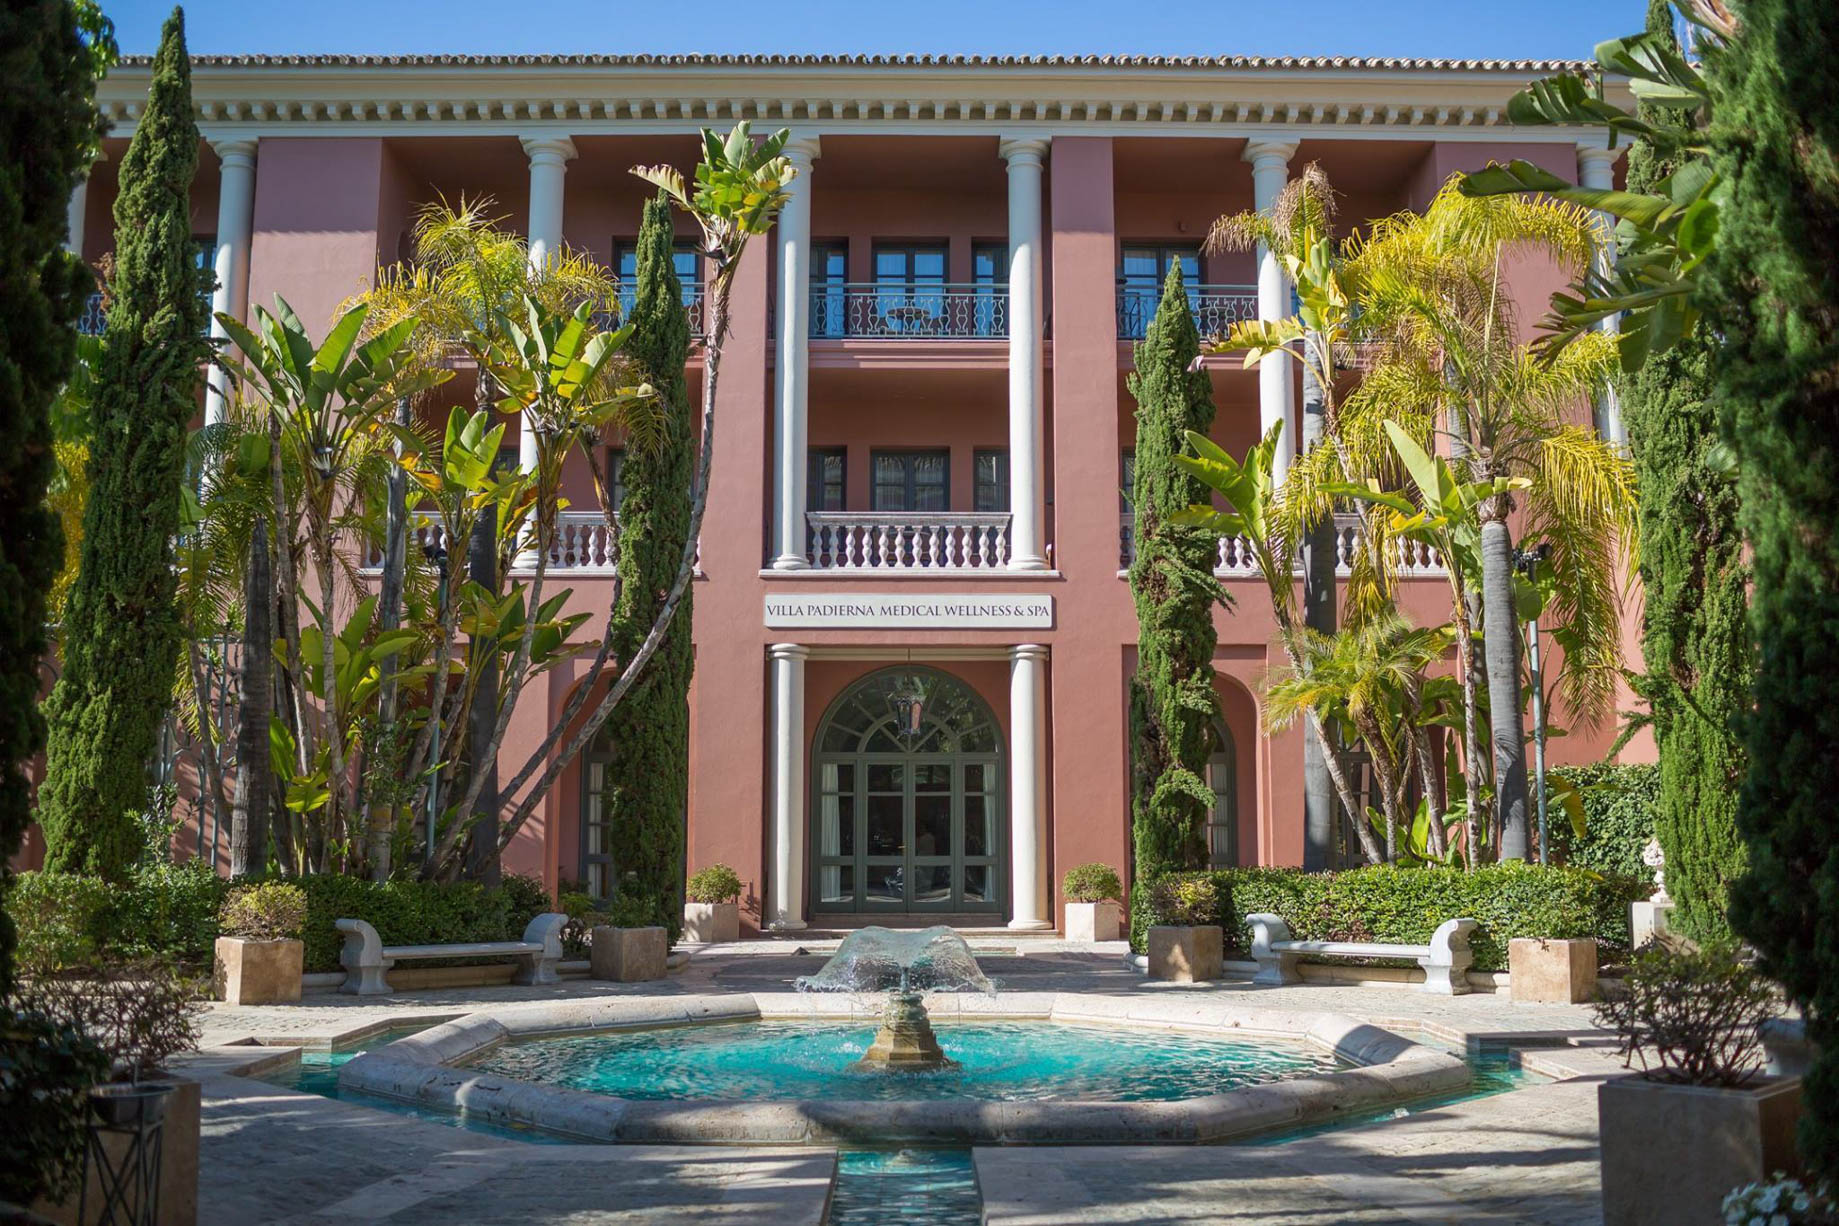 Anantara Villa Padierna Palace Benahavís Marbella Resort – Spain – Spa Entrance